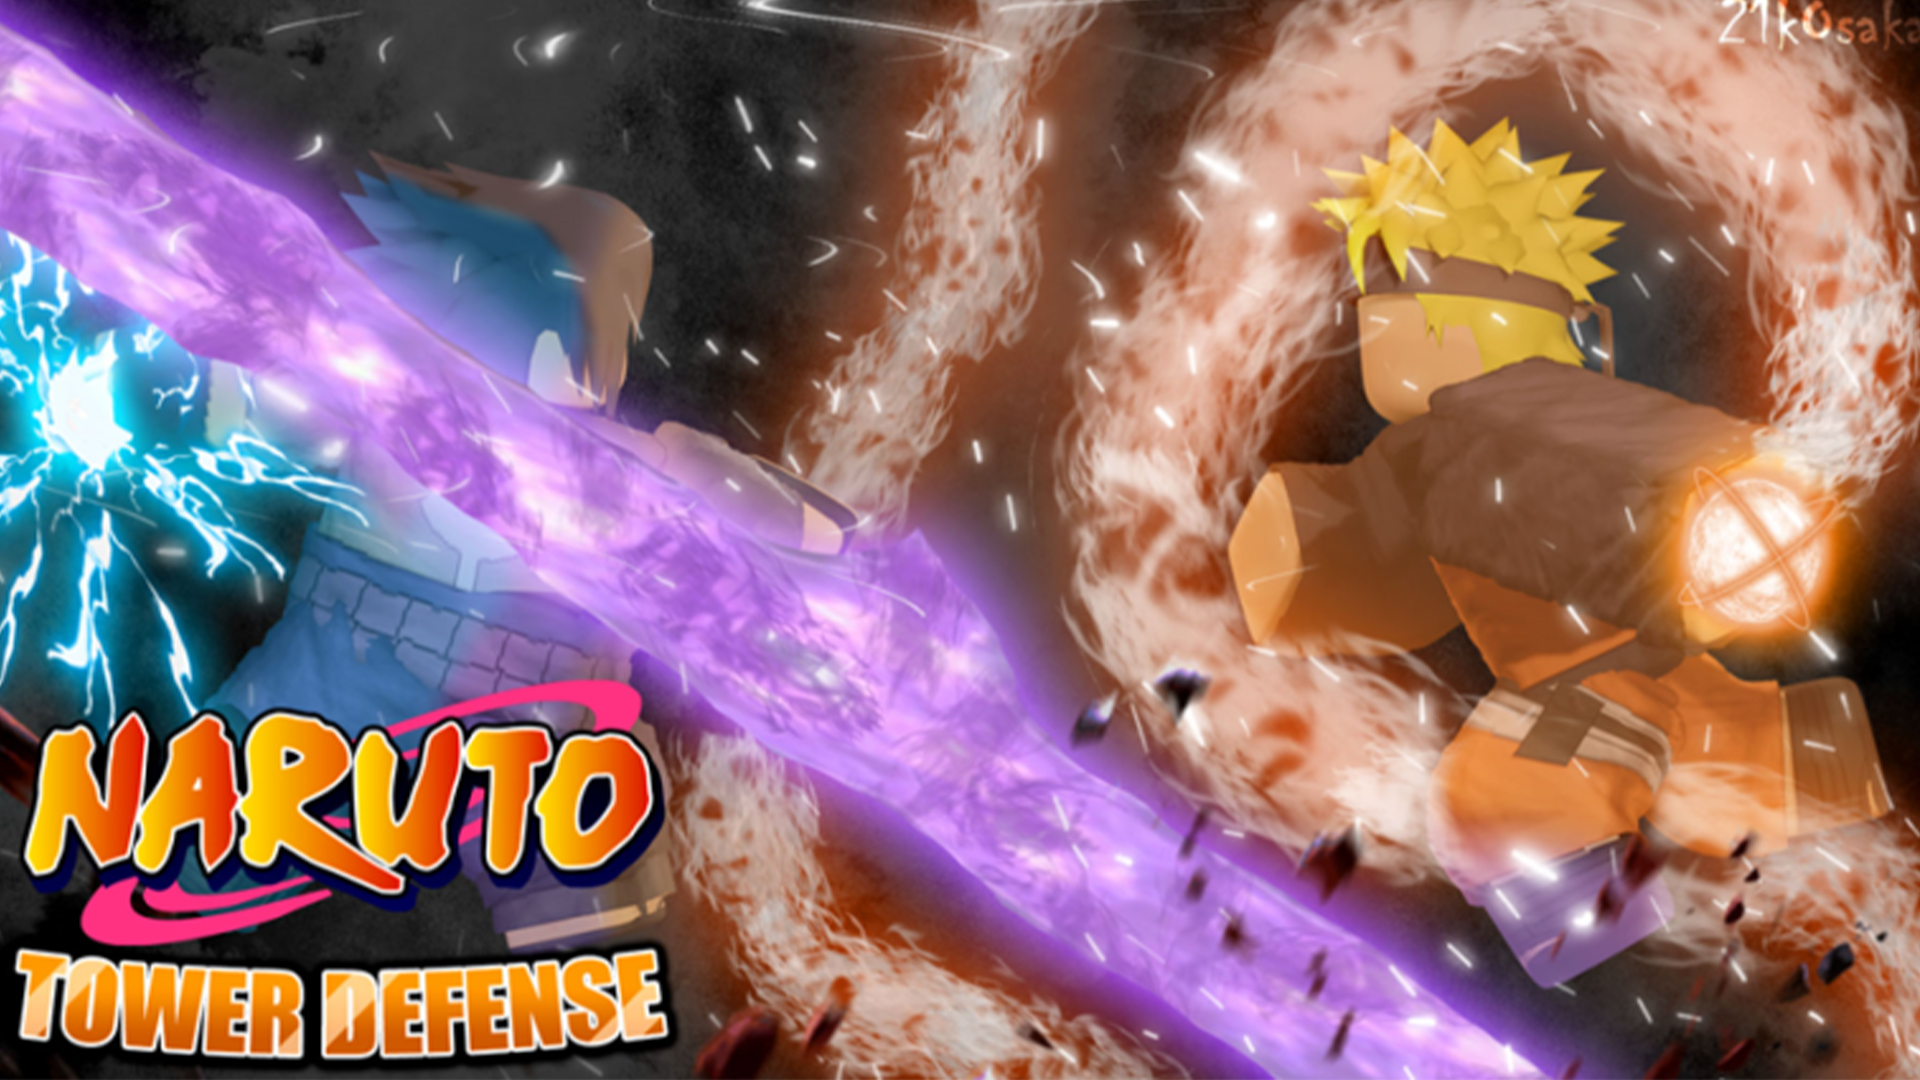 Roblox – Códigos do Naruto Defense Simulator (agosto 2023) - Critical Hits